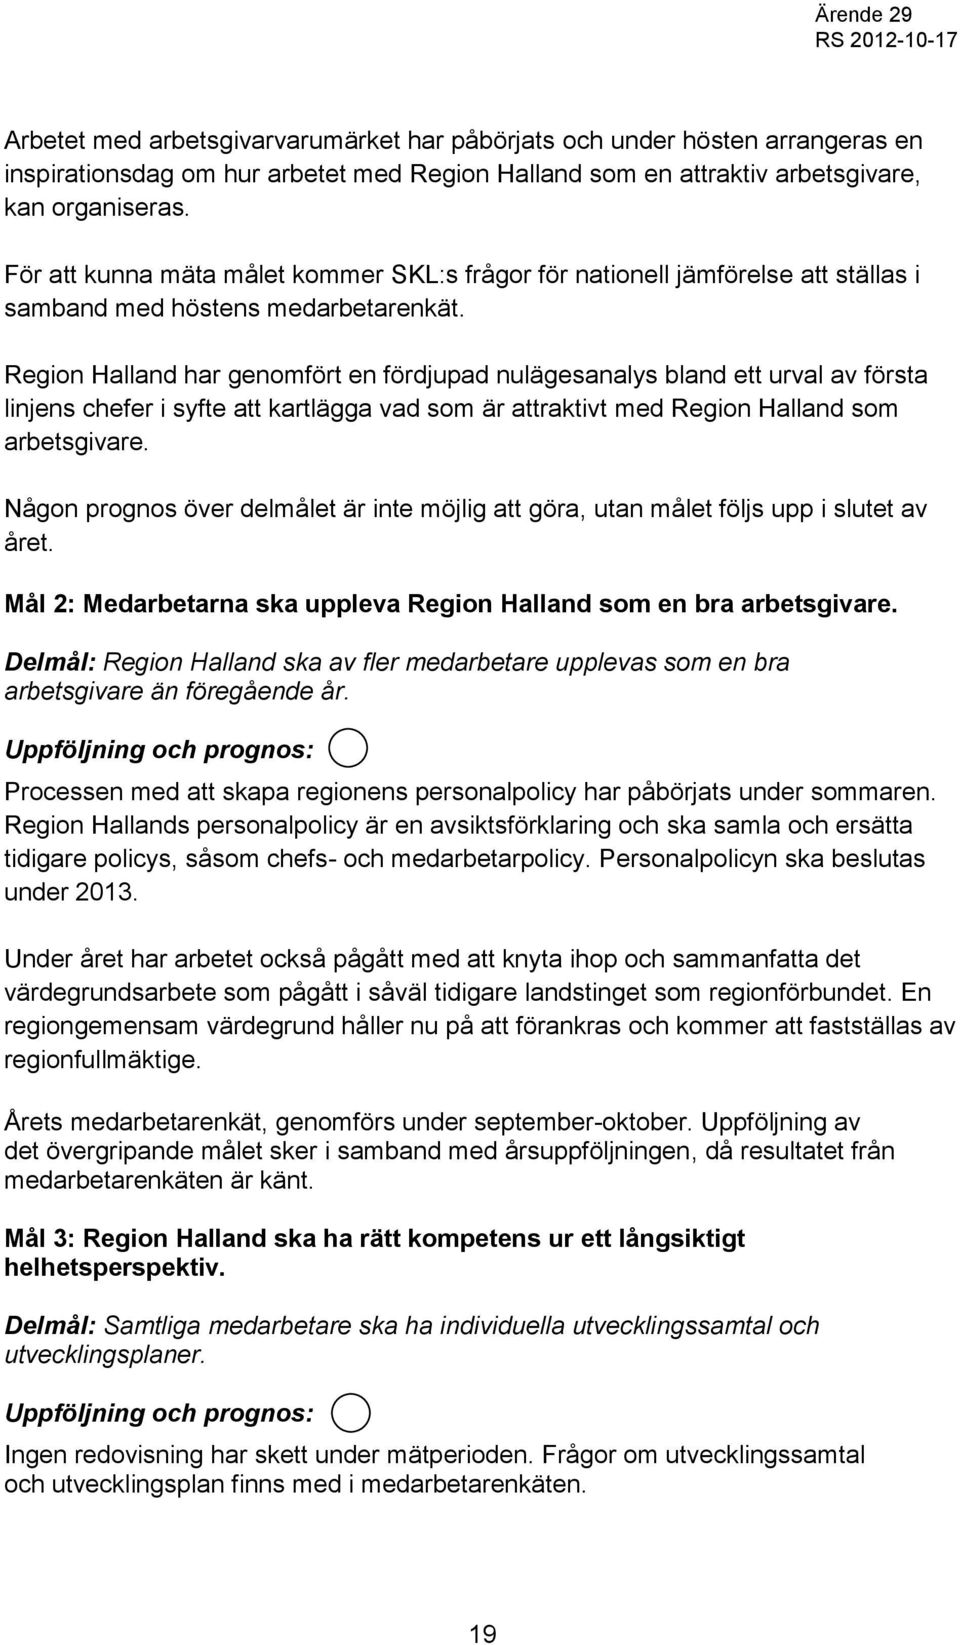 Region Halland har genomfört en fördjupad nulägesanalys bland ett urval av första linjens chefer i syfte att kartlägga vad som är attraktivt med Region Halland som arbetsgivare.